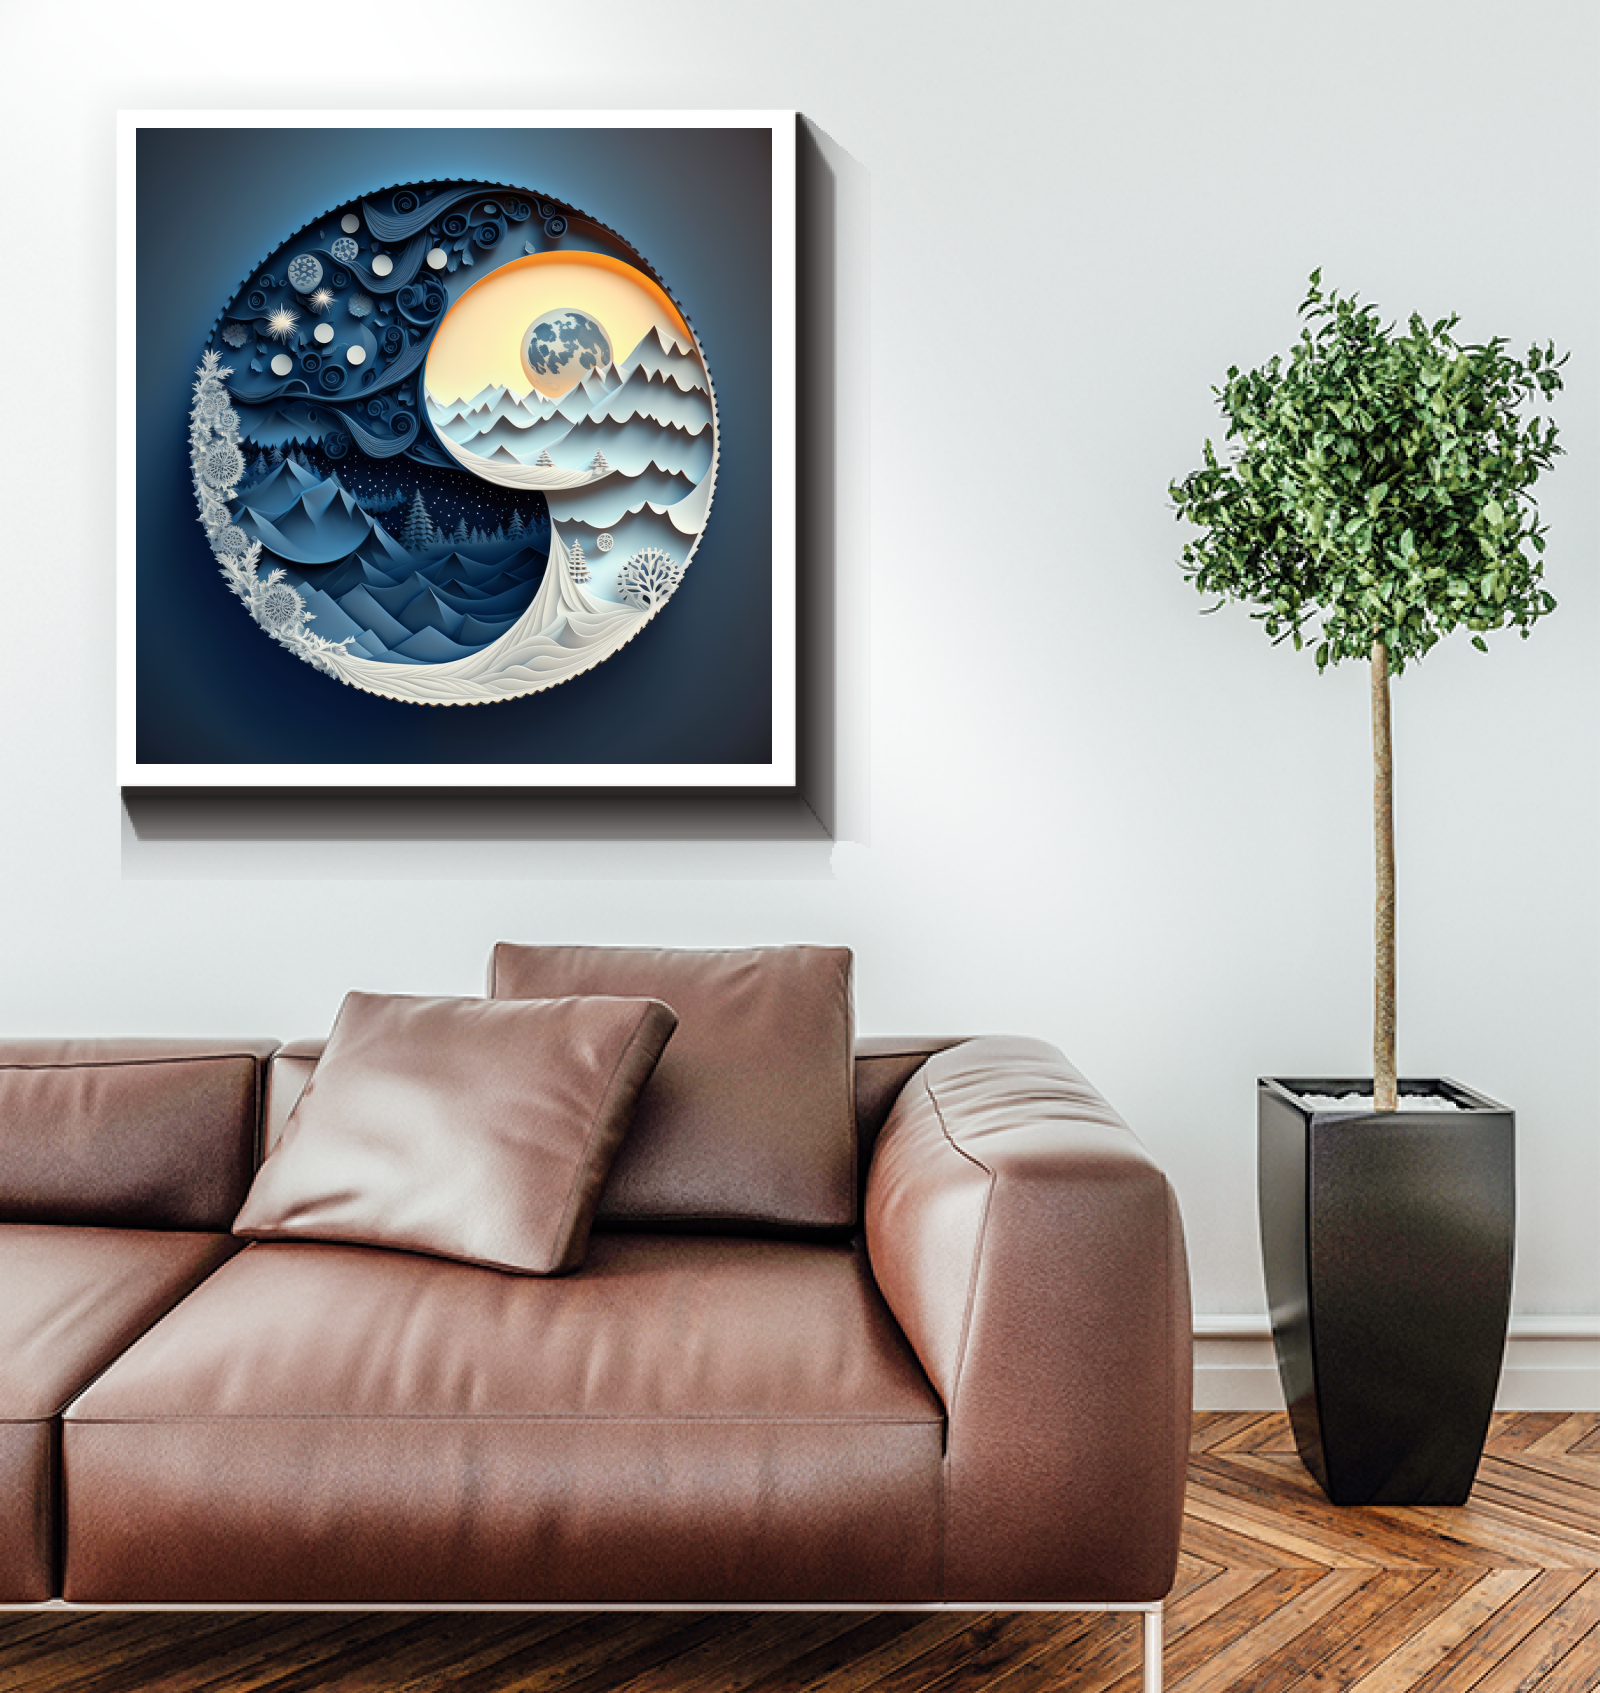 Elegant lunar and solar symbols on canvas for modern homes.